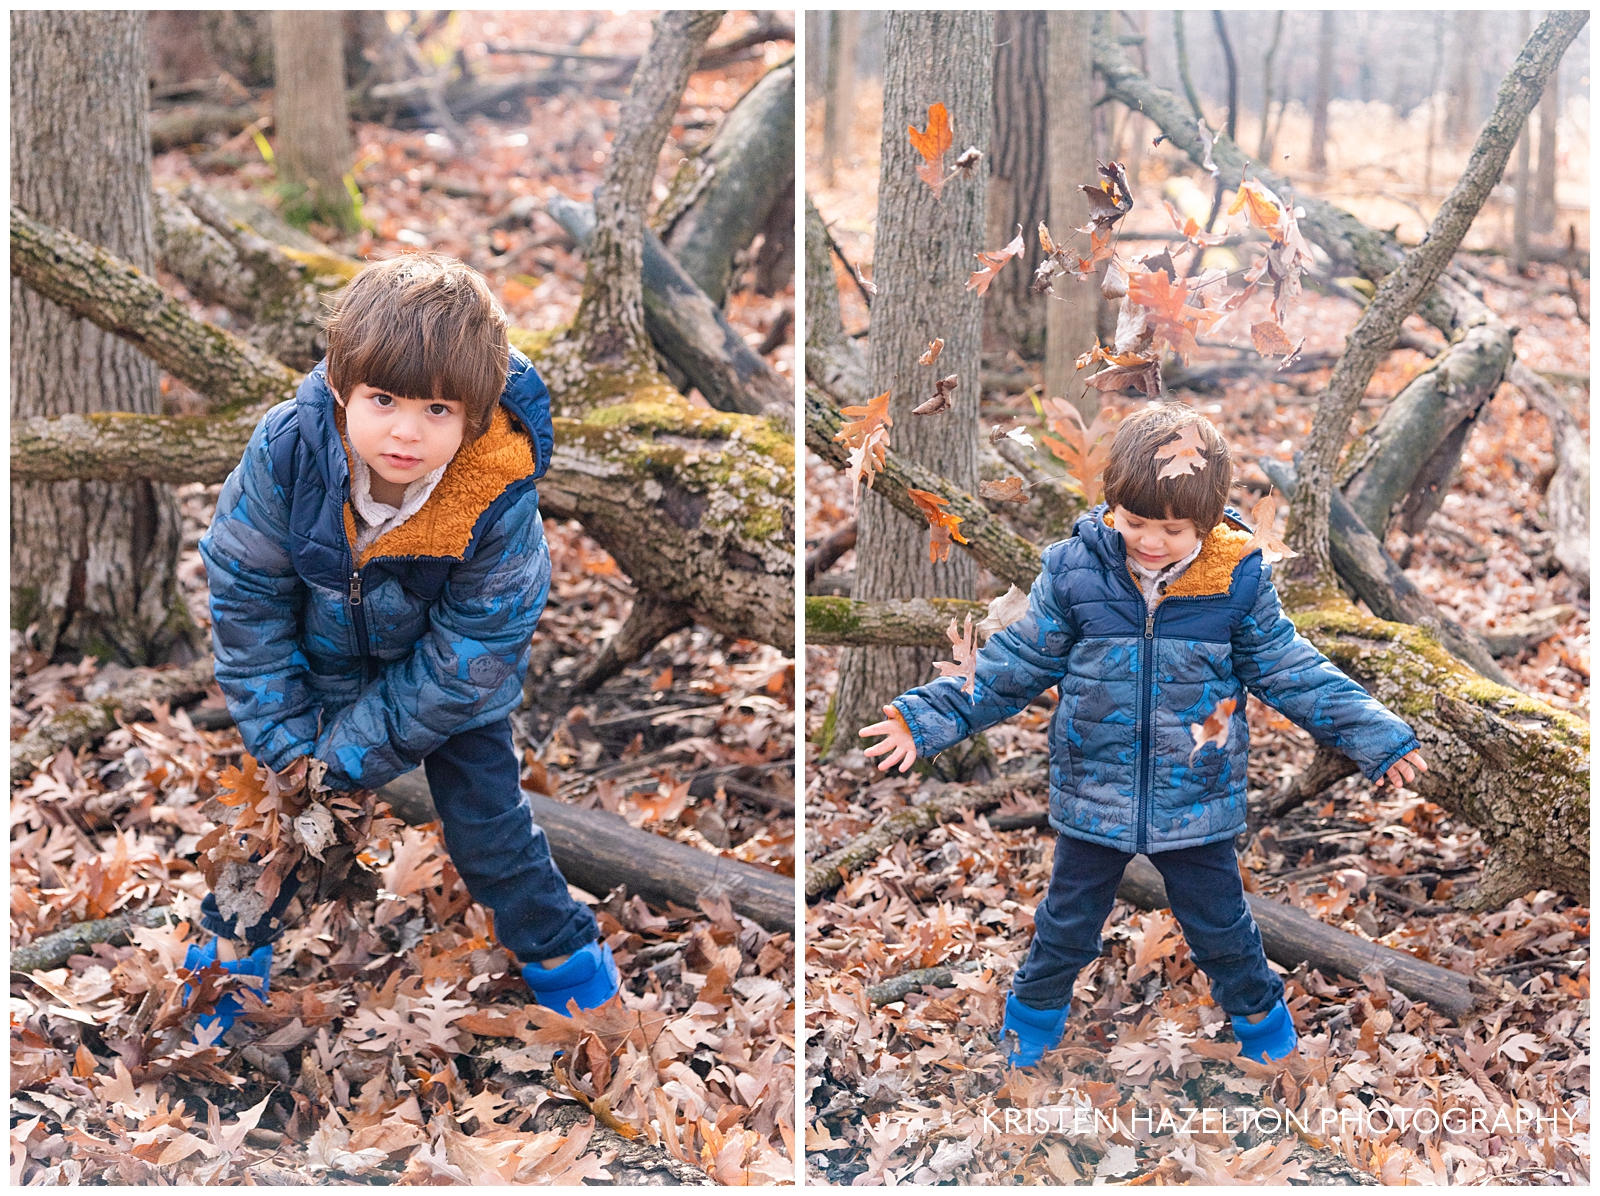 Toddler boy throwing leaves